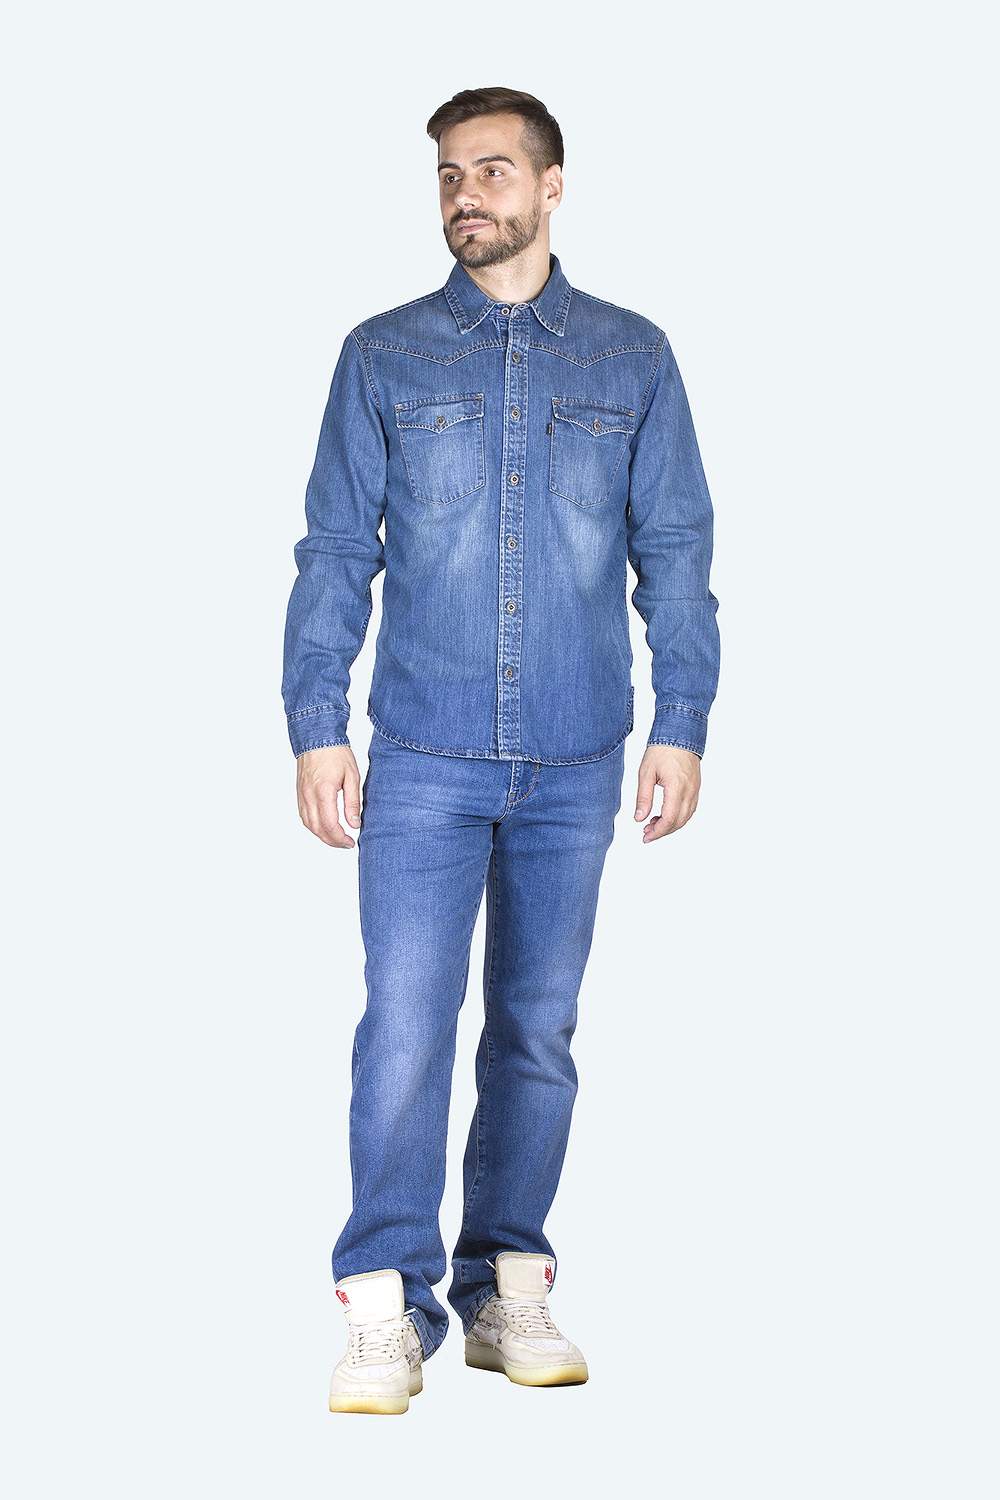 Джинсовая рубашка мужская Dairos GD5080100 синяя 2XL